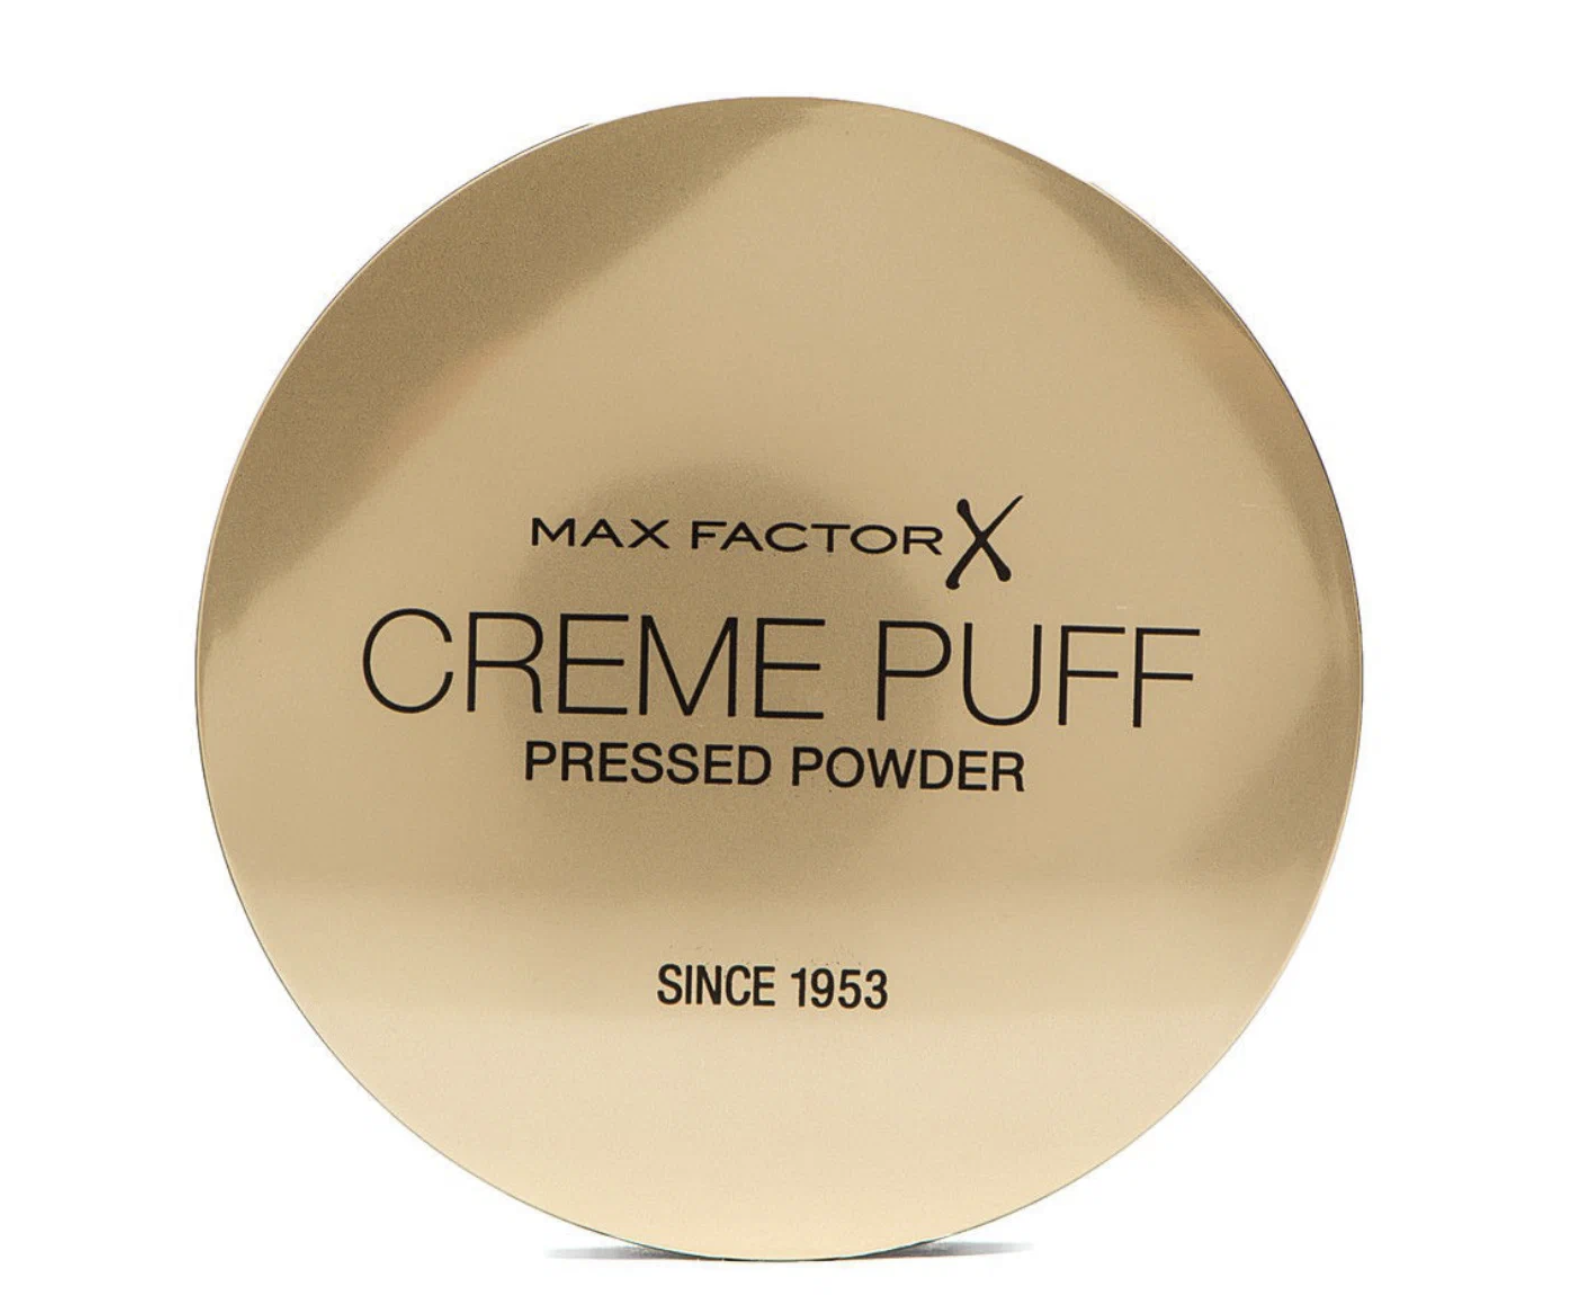 Крем-пудра для лица Max Factor Creme Puff Pressed Powder 40 Creamy Ivory 1 крем пудра для лица top cover creamy powder 2331r27 004n n 4 n 4 1 шт